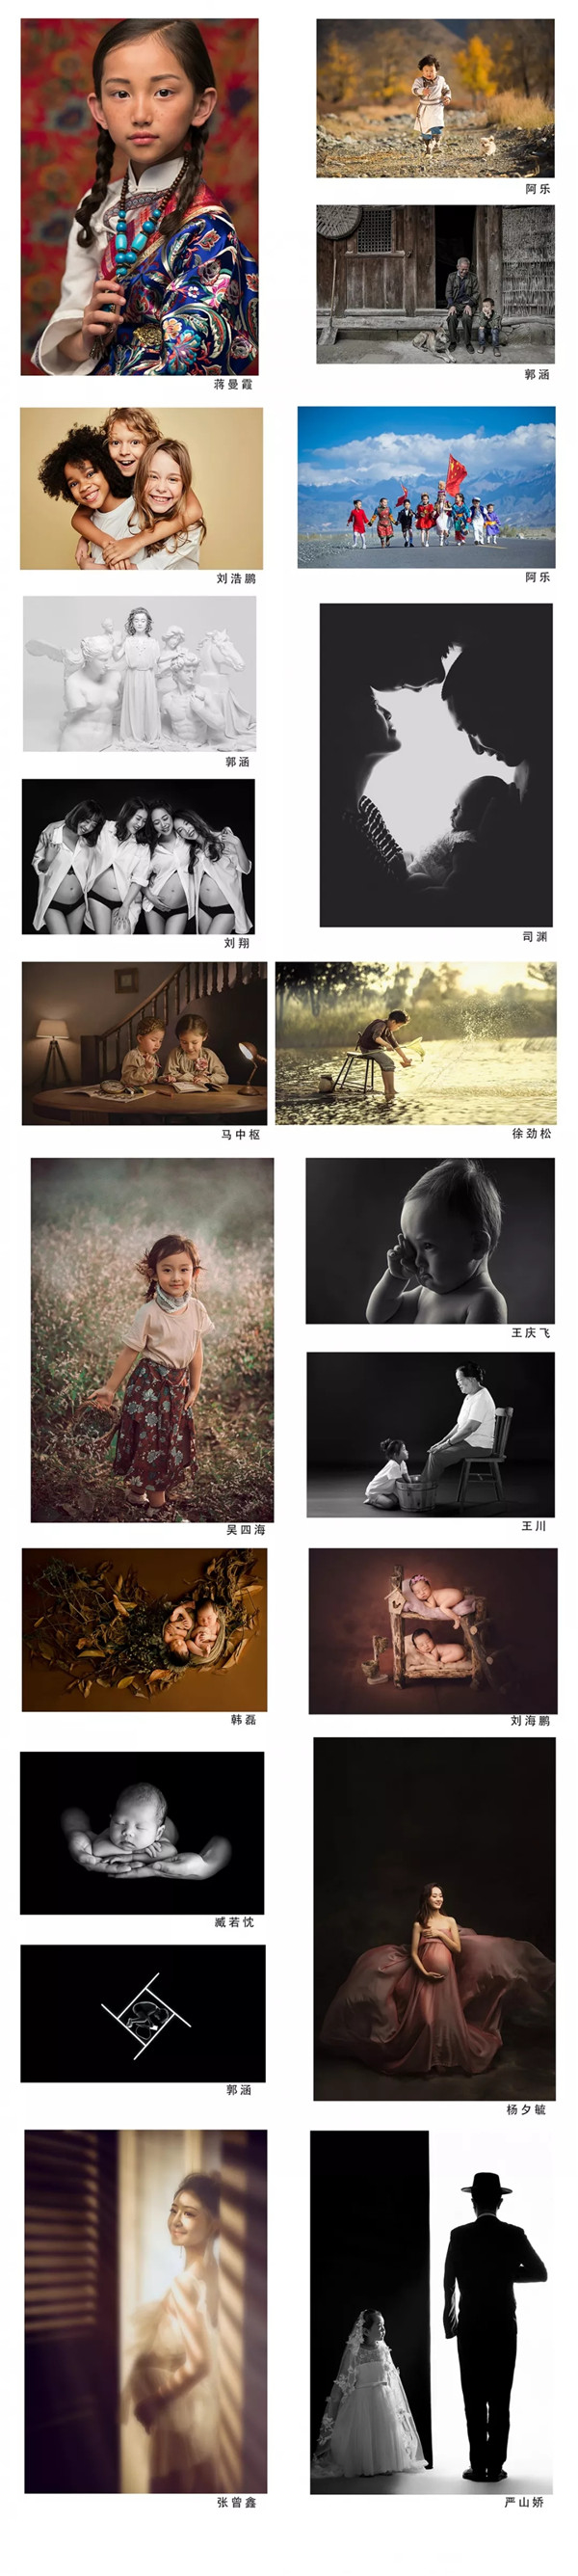 首届中国儿童摄影大师荣耀诞生 工匠精神引领新时代